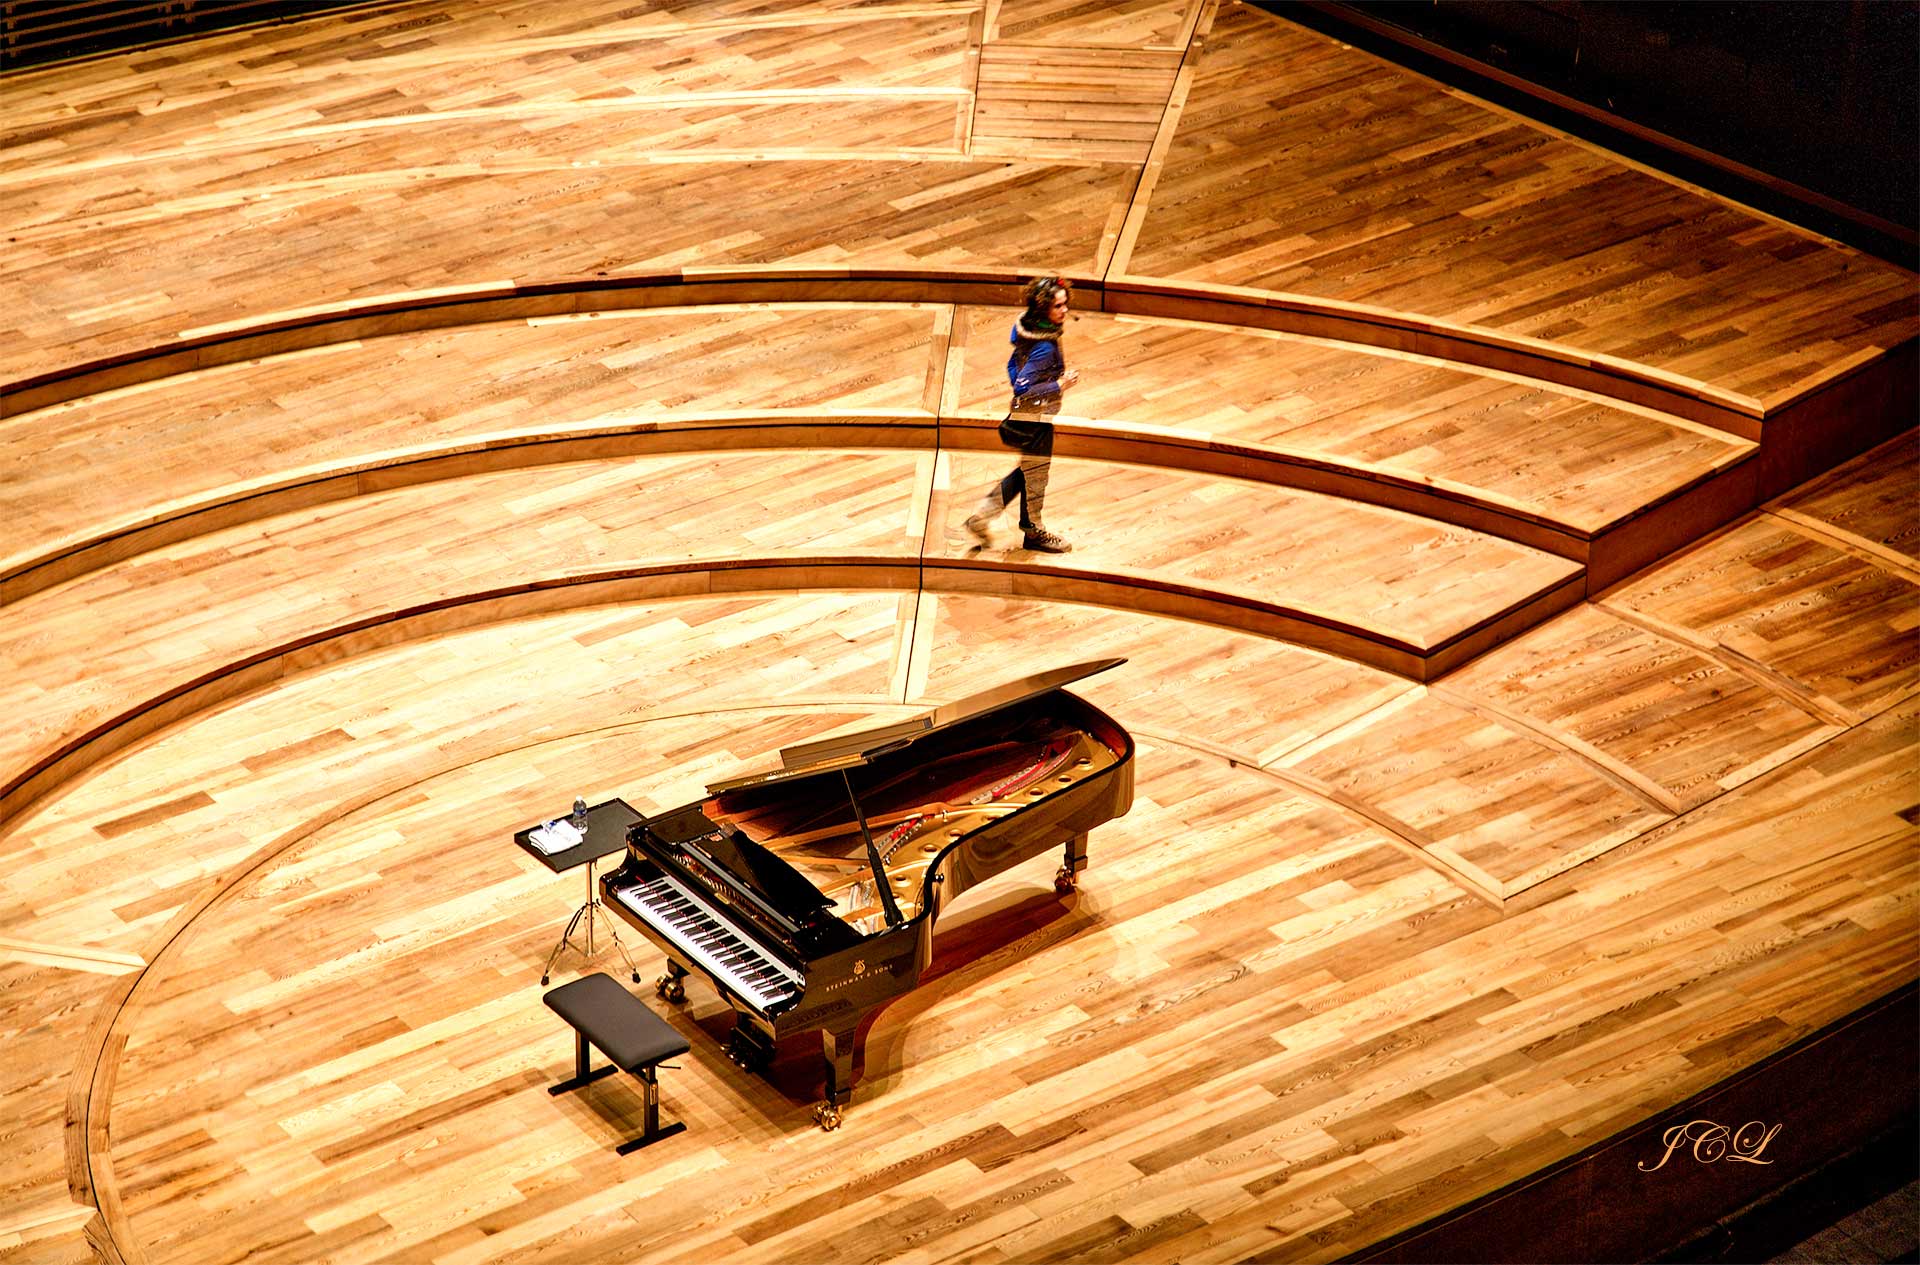 La Philharmonie de Paris la Villette bénéficie d'un équipement acoustique de très haute qualité. L'inauguration a eu lieu en janvier 2015. Sa salle de concert Pierre Boulez dispose de 2400 places. L'architecte est Jean Nouvel.